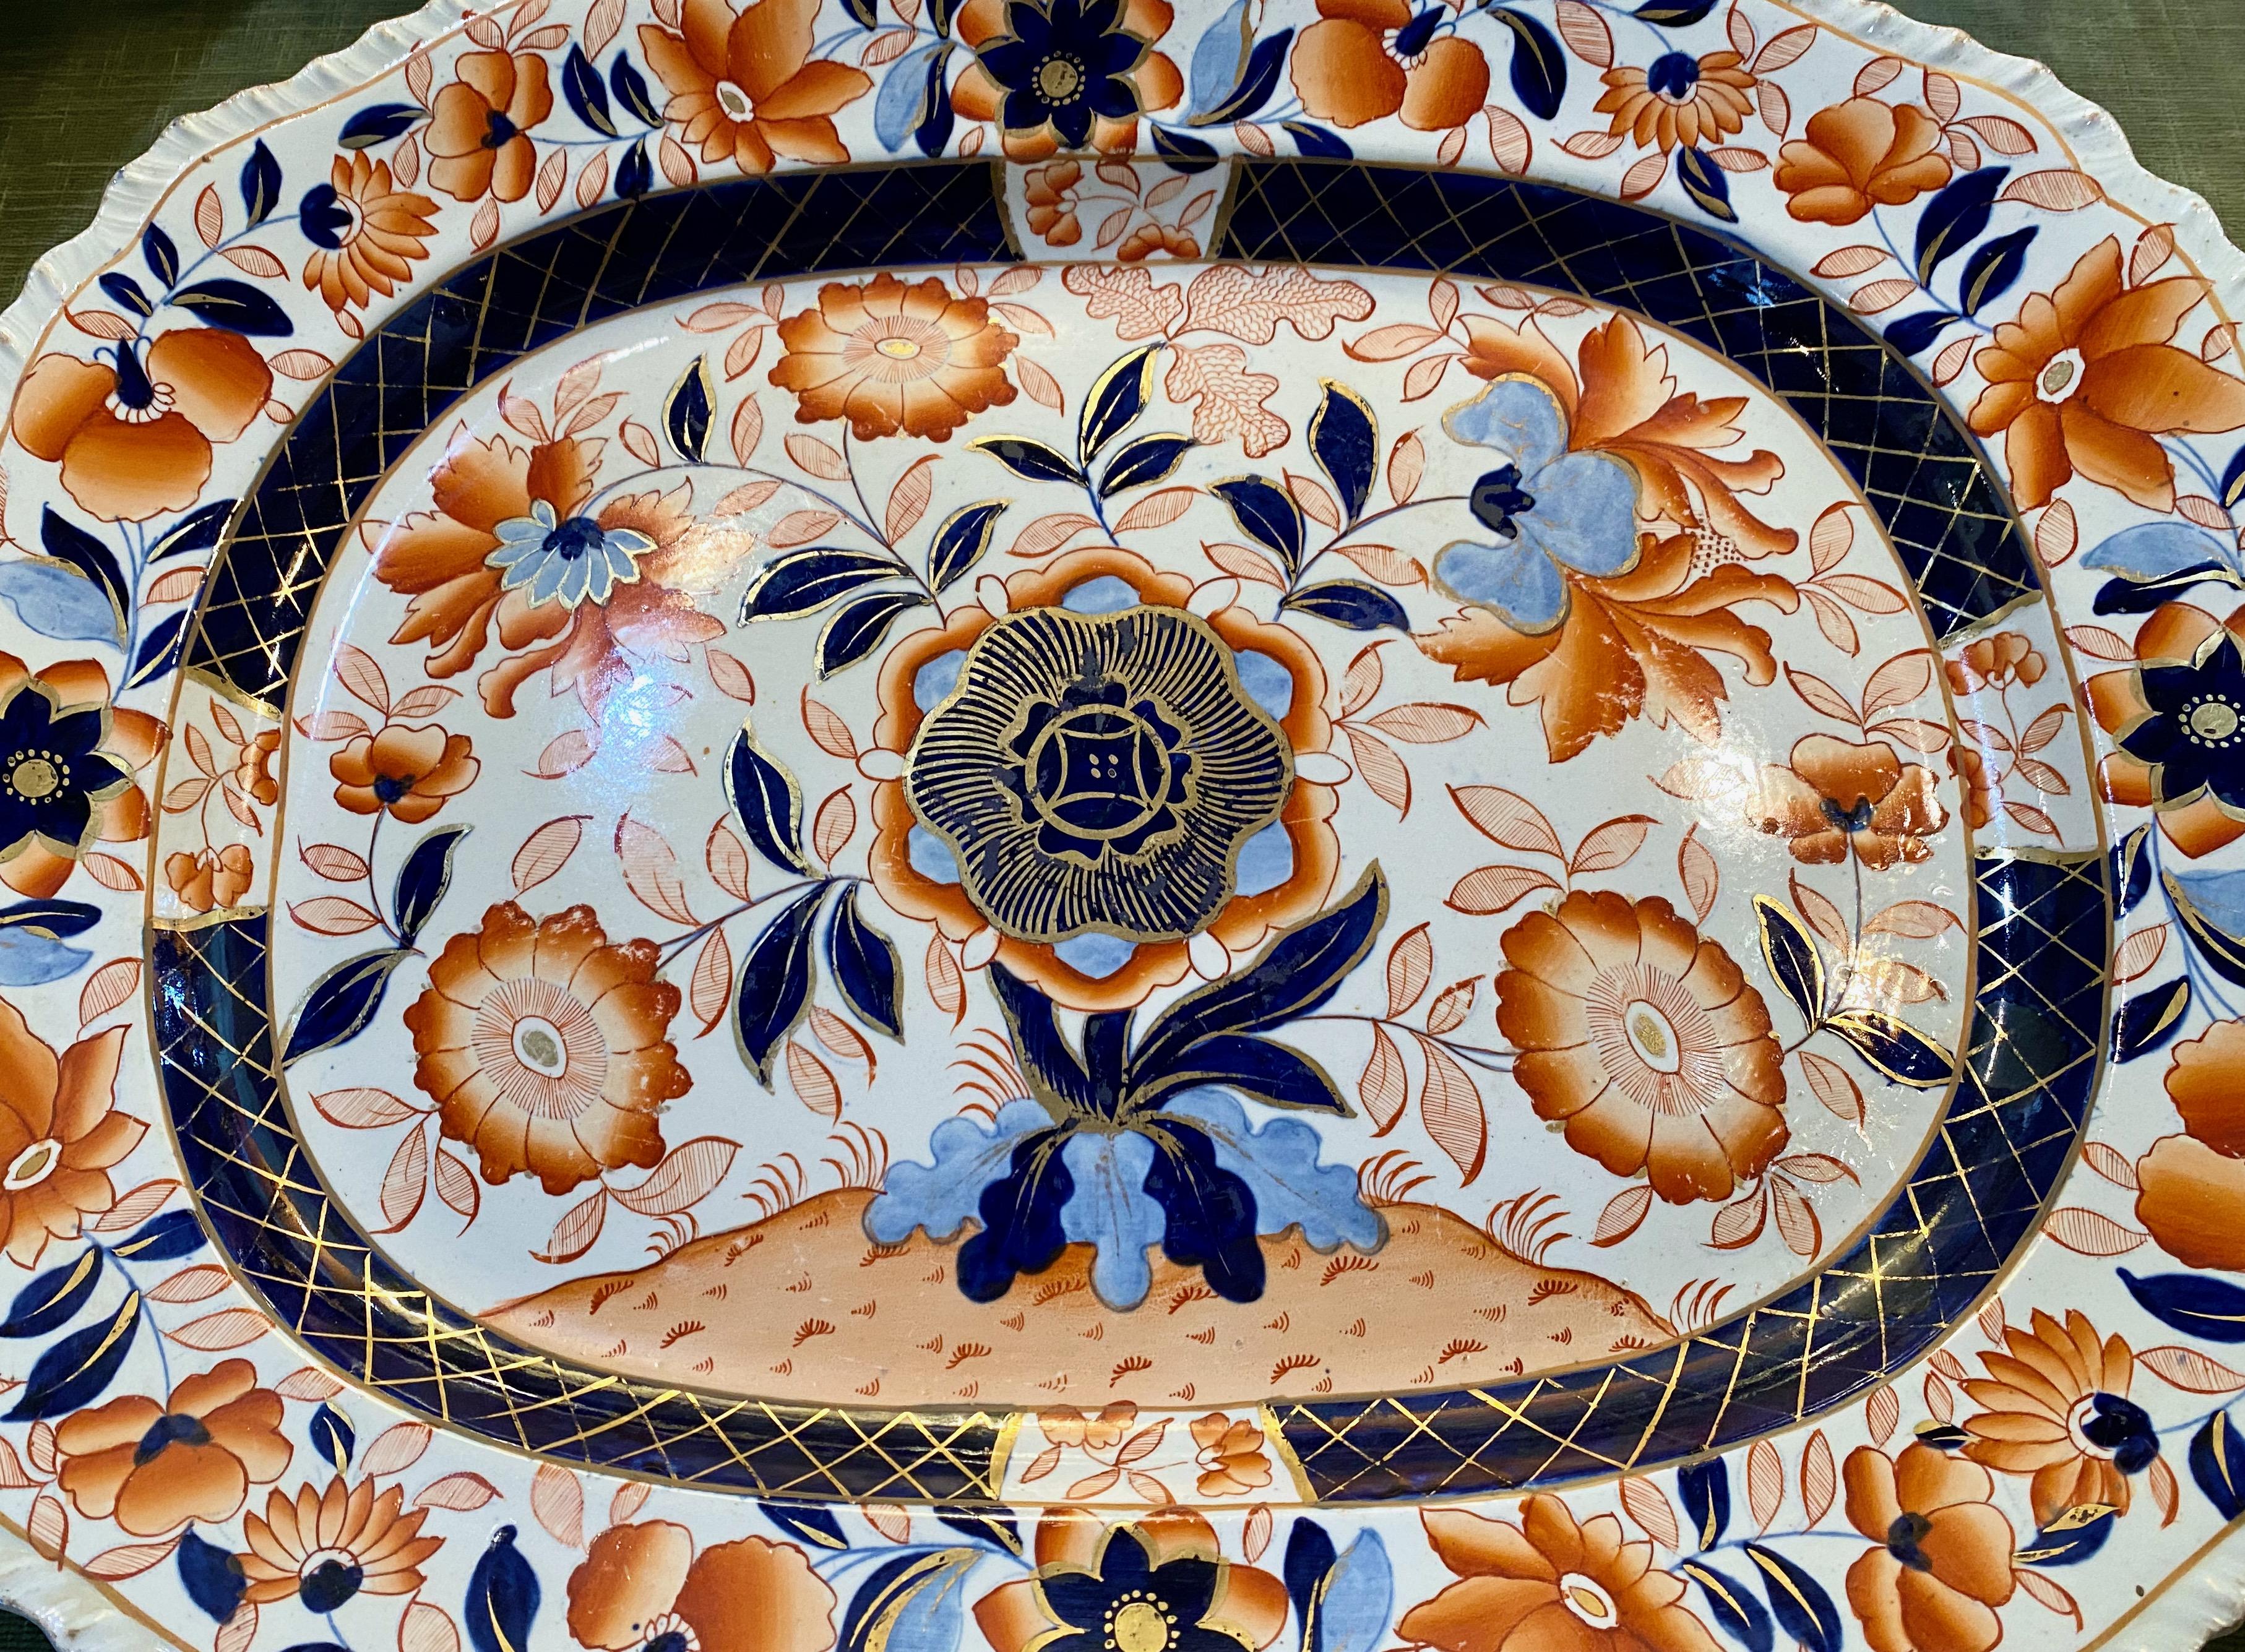 Dies ist eine außergewöhnlich große englische viktorianische Eisensteinplatte aus der Mitte des 19. Jahrhunderts, die mit einem wunderschön detaillierten japanischen Imari-Muster verziert ist. Die Emaillierung ist scharf und tief gefärbt, und das